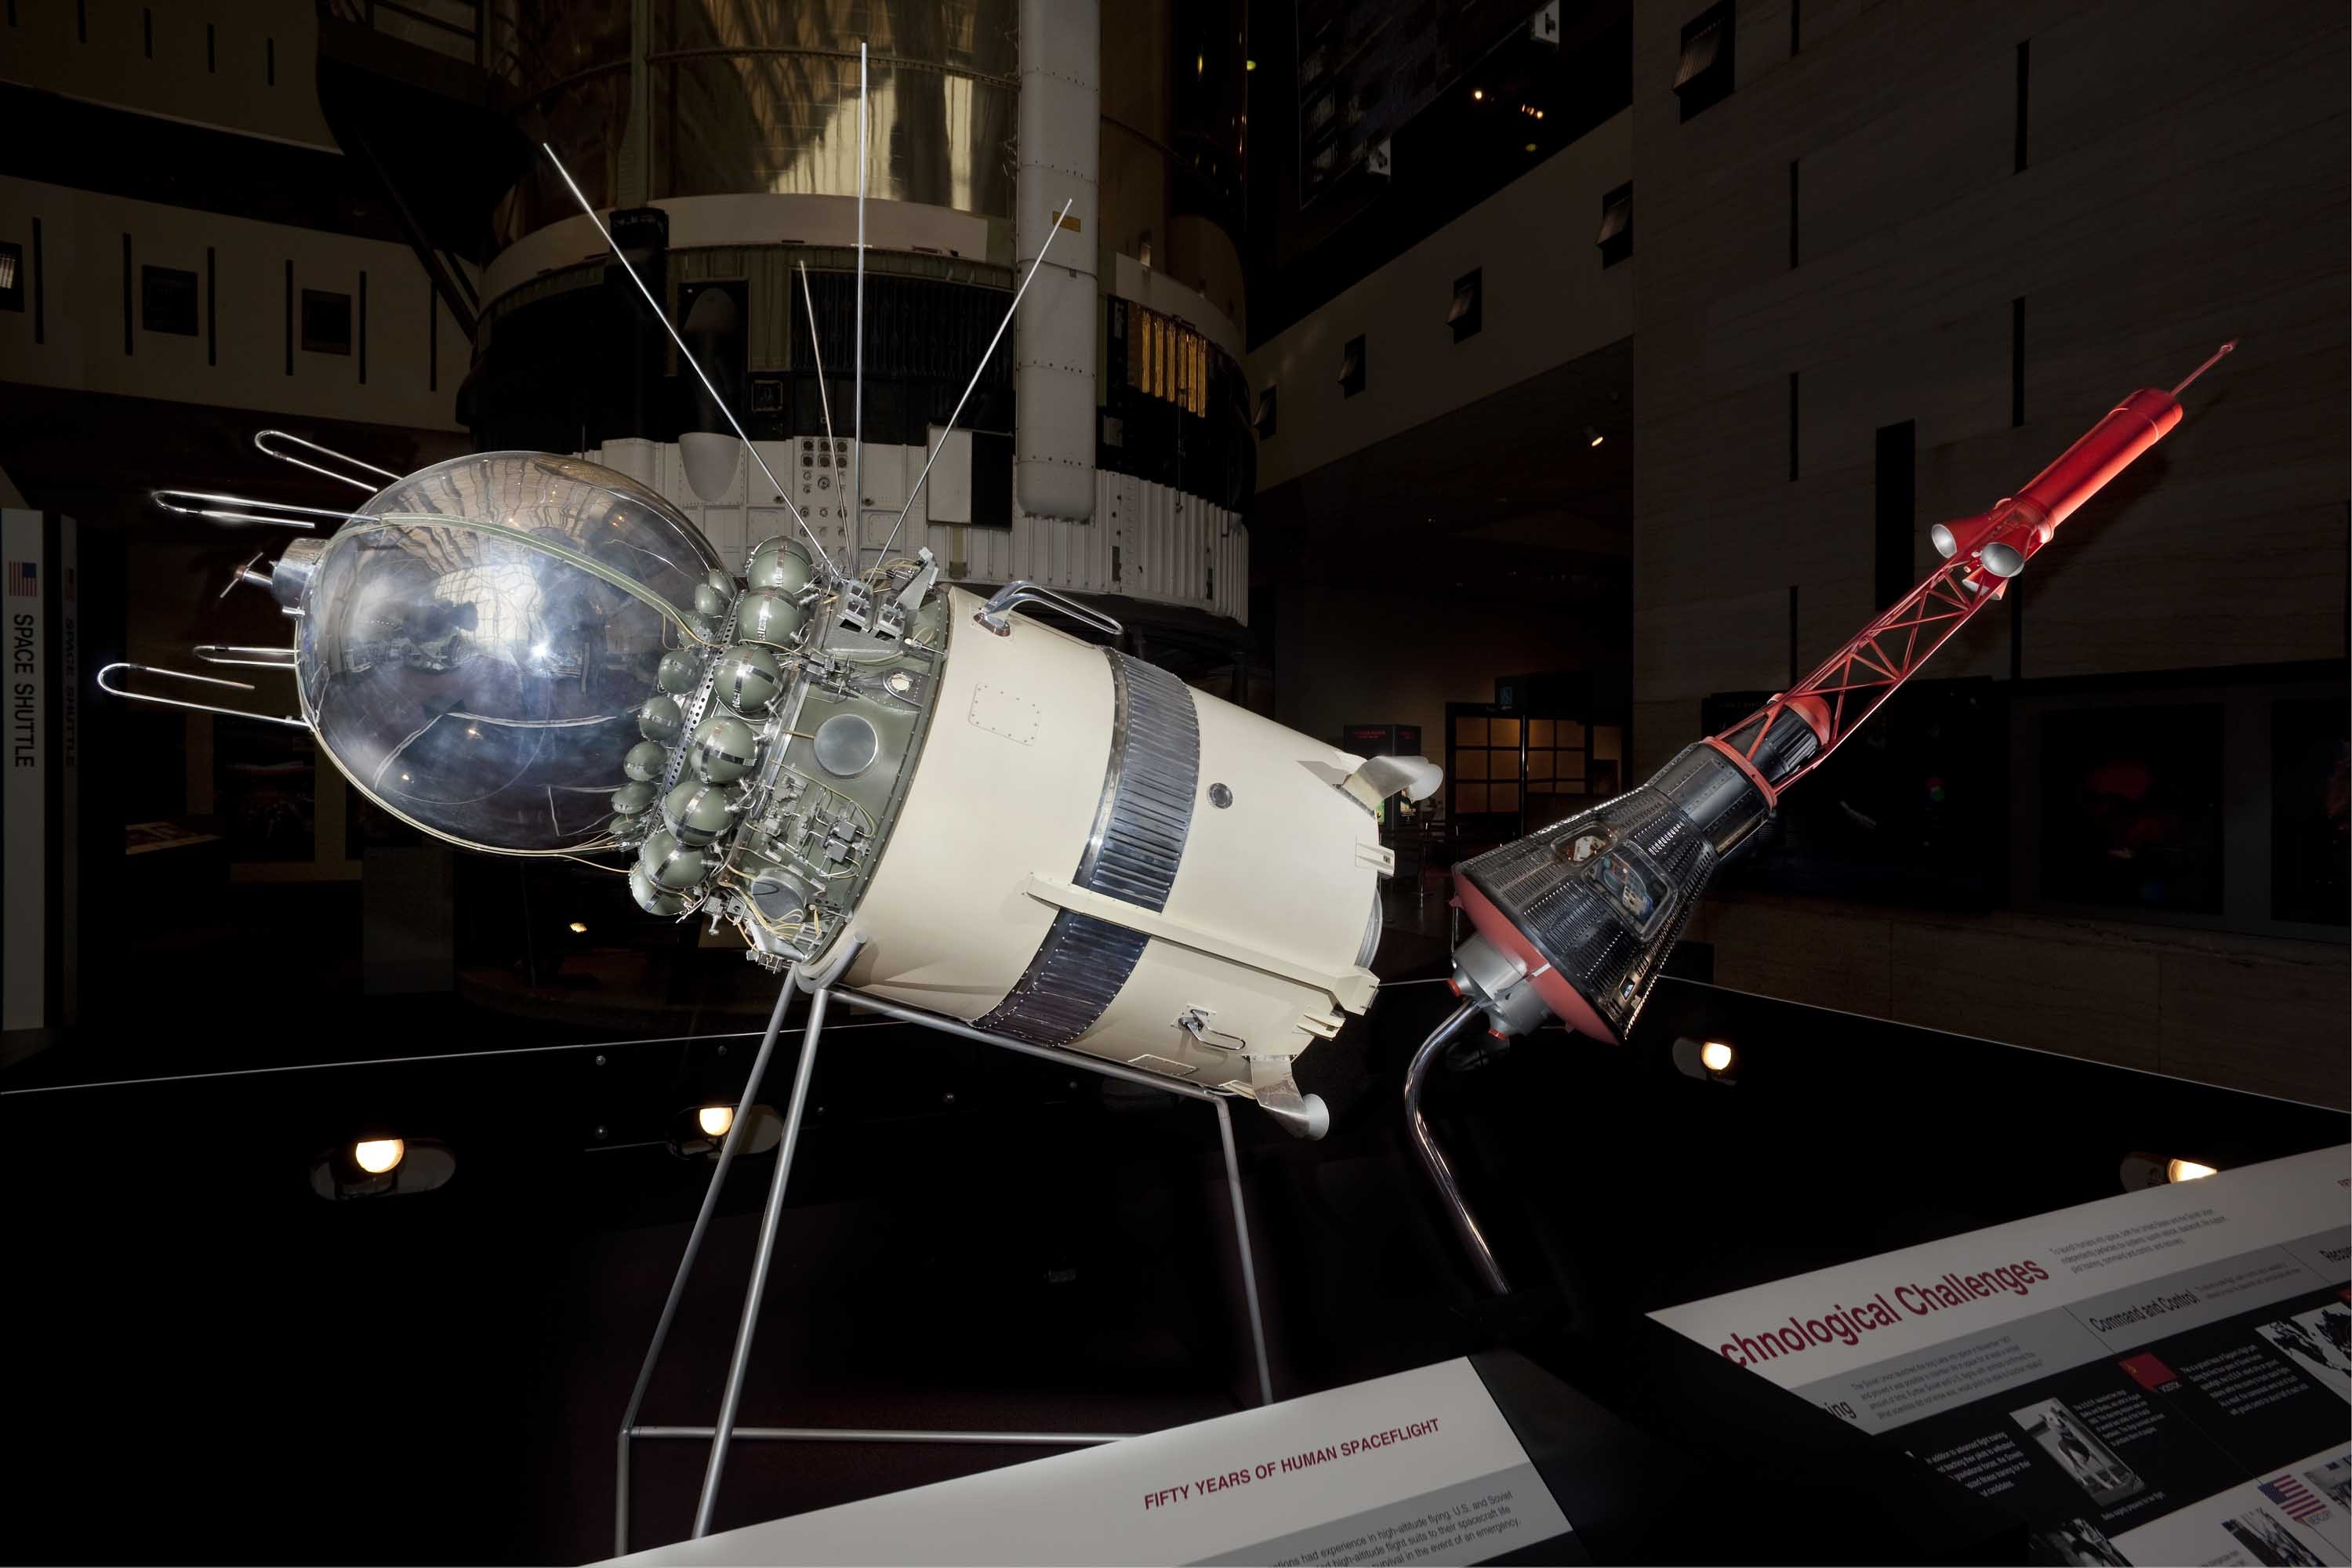 Первый корабль полетевший в космос. Первый пилотируемый космический корабль Восток-1. Восток-3 пилотируемый космический корабль. Корабль Восход 1. Спутник Восток 1.